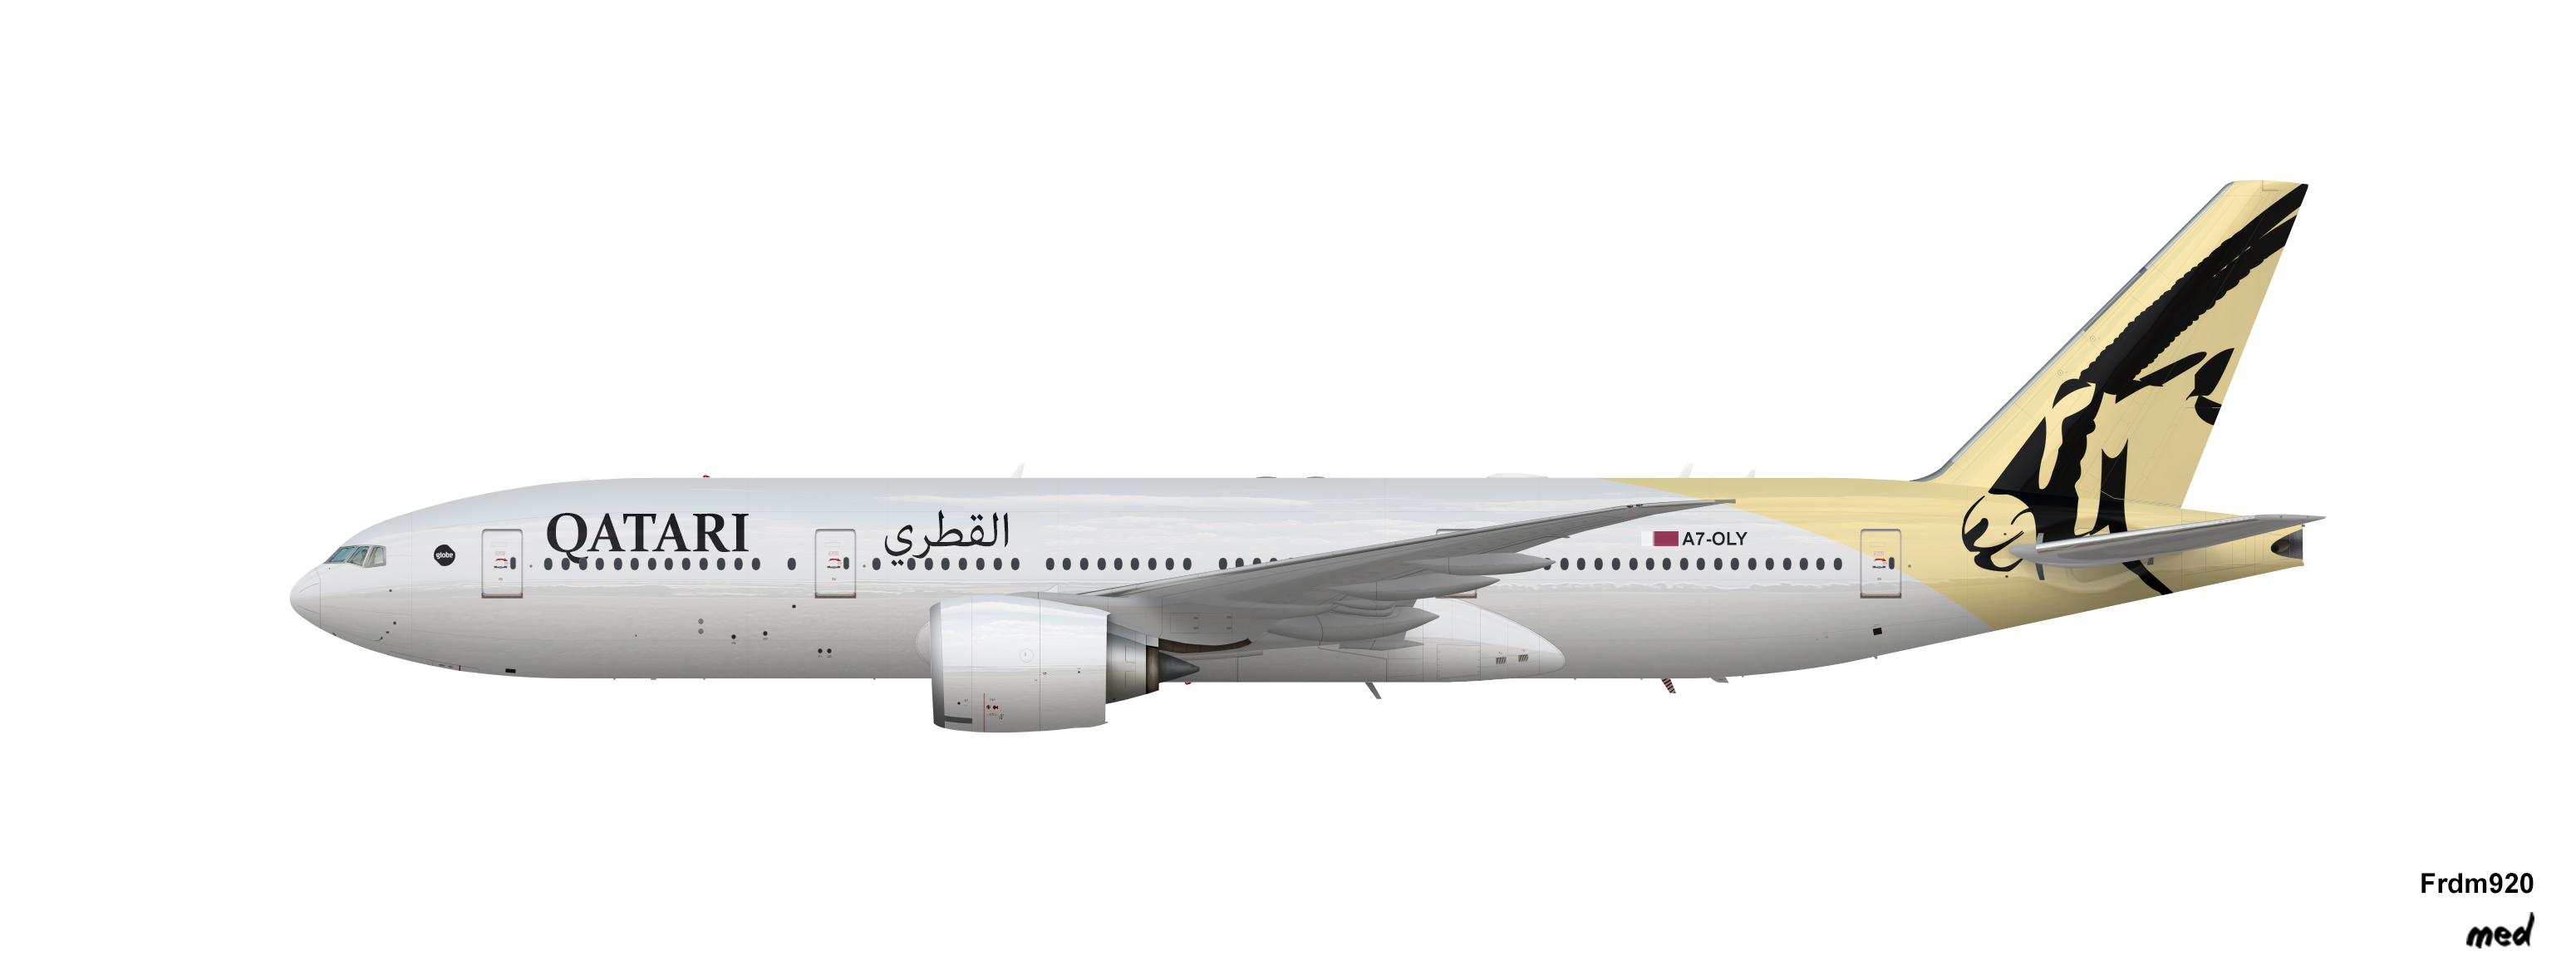 Boeing 777-200 Qatari V2